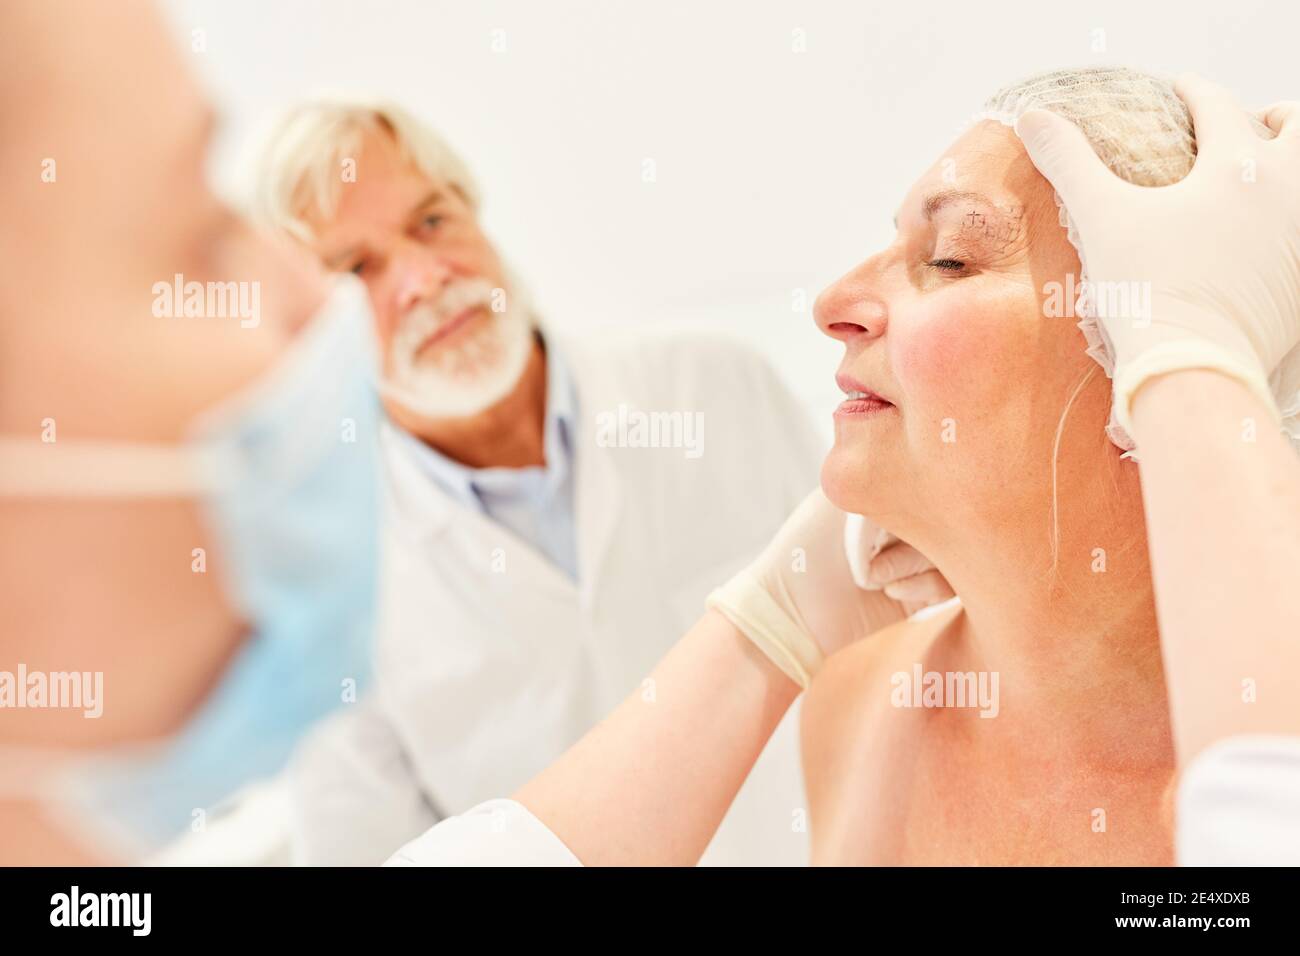 Spécialistes en chirurgie esthétique vérifiant une correction de paupière dans un femme âgée Banque D'Images